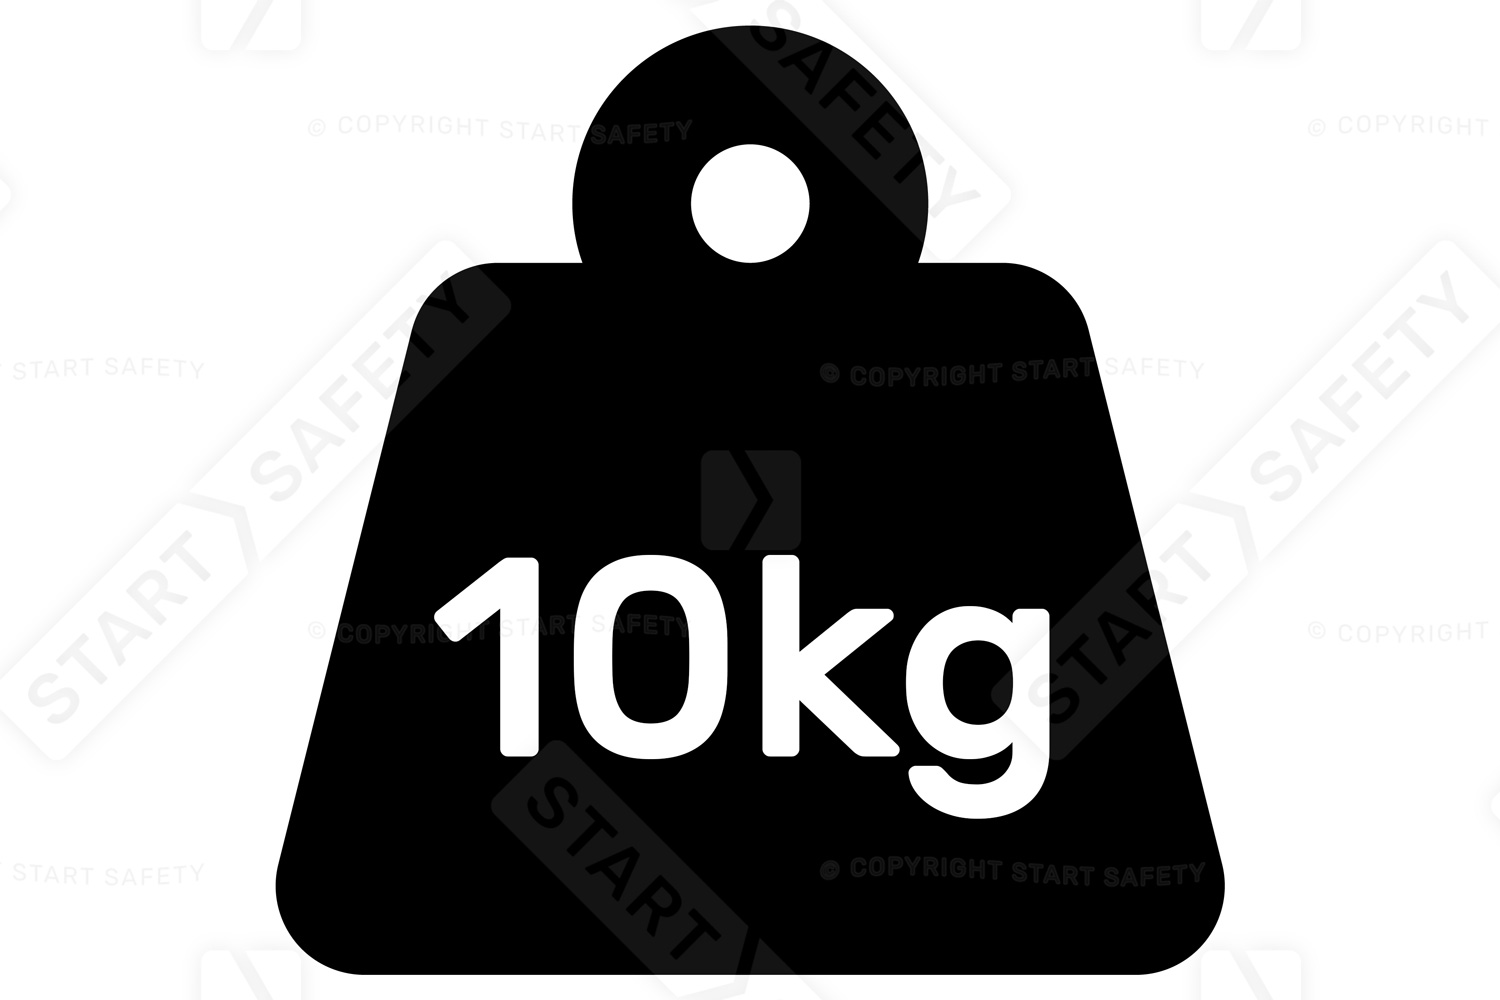 10kg Weight Limit